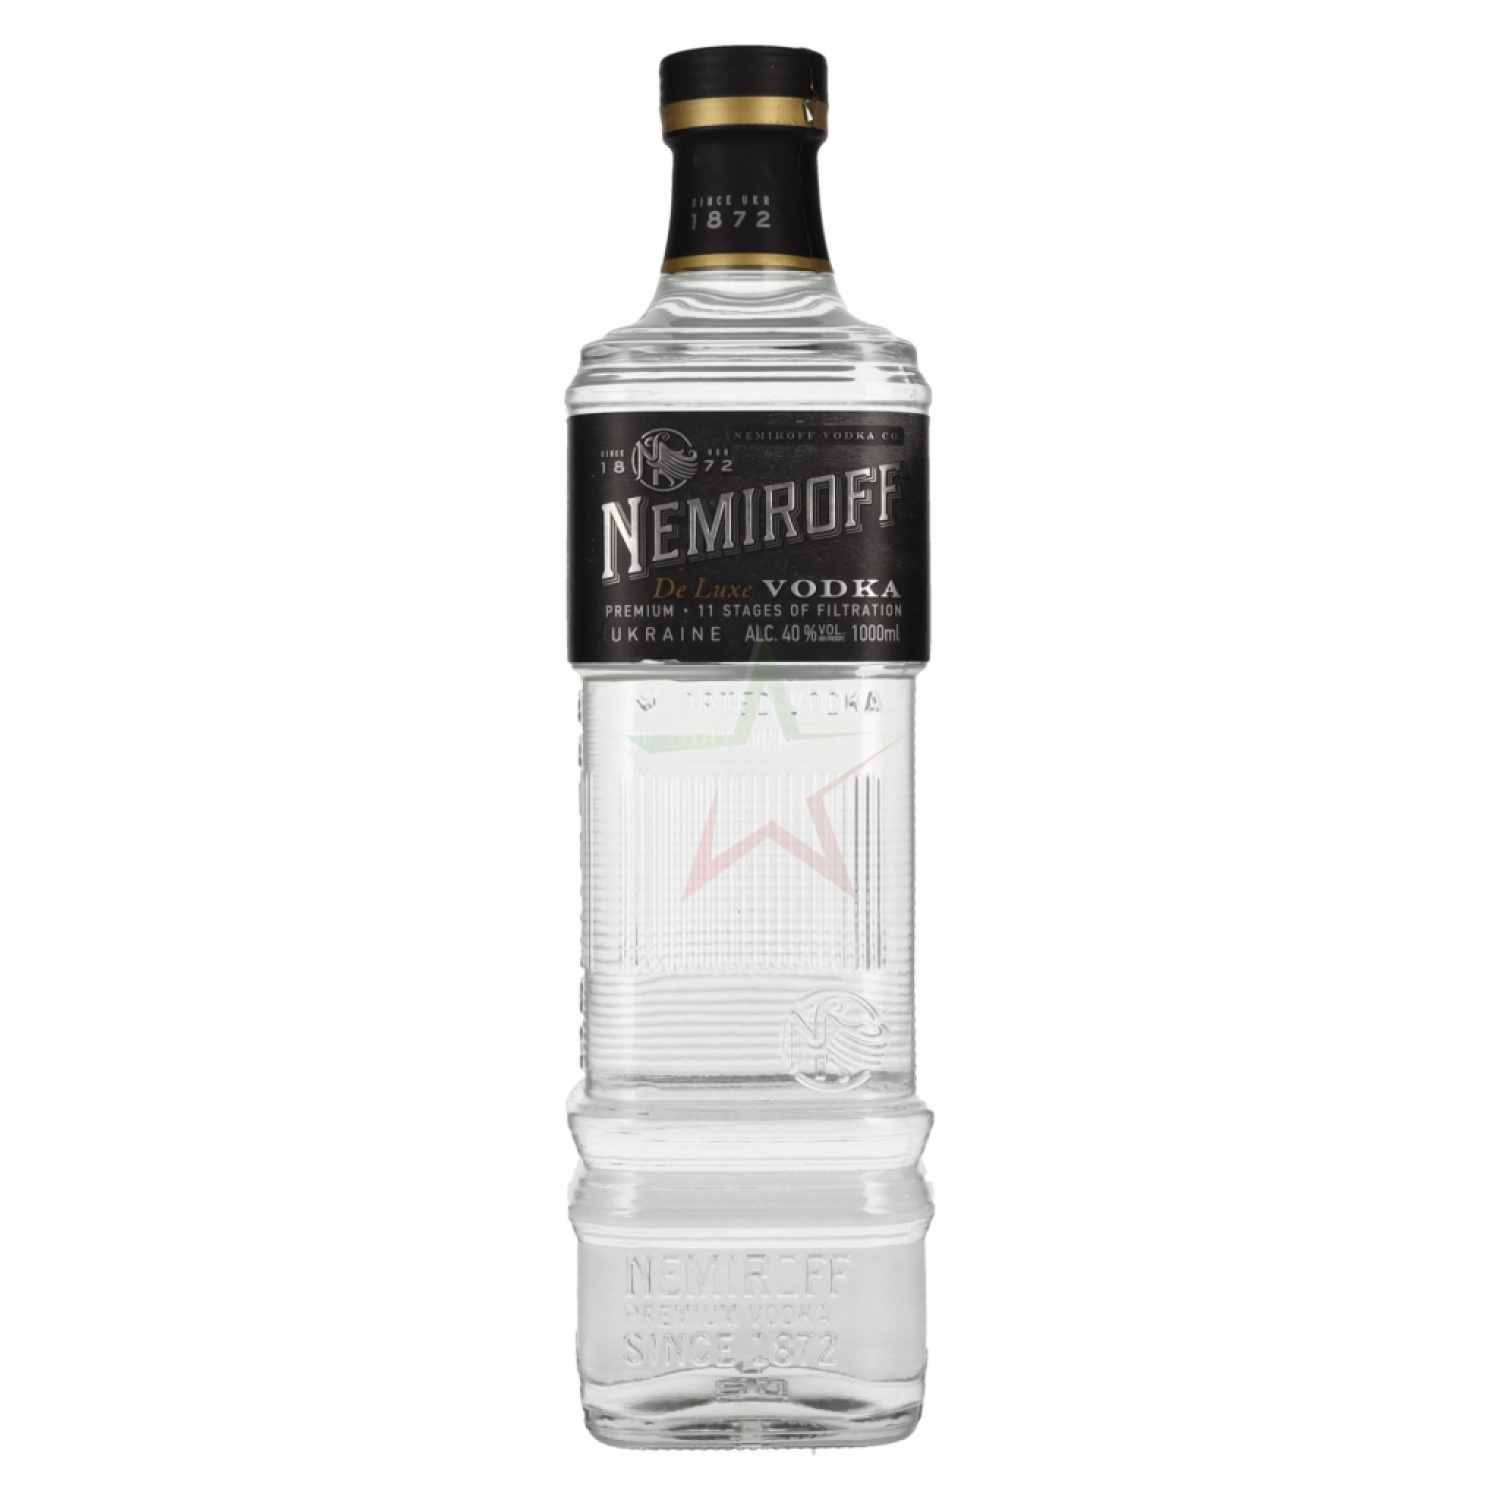 Belvedere Vodka Lemon & Basil 0,7 Liter 40 % Vol.